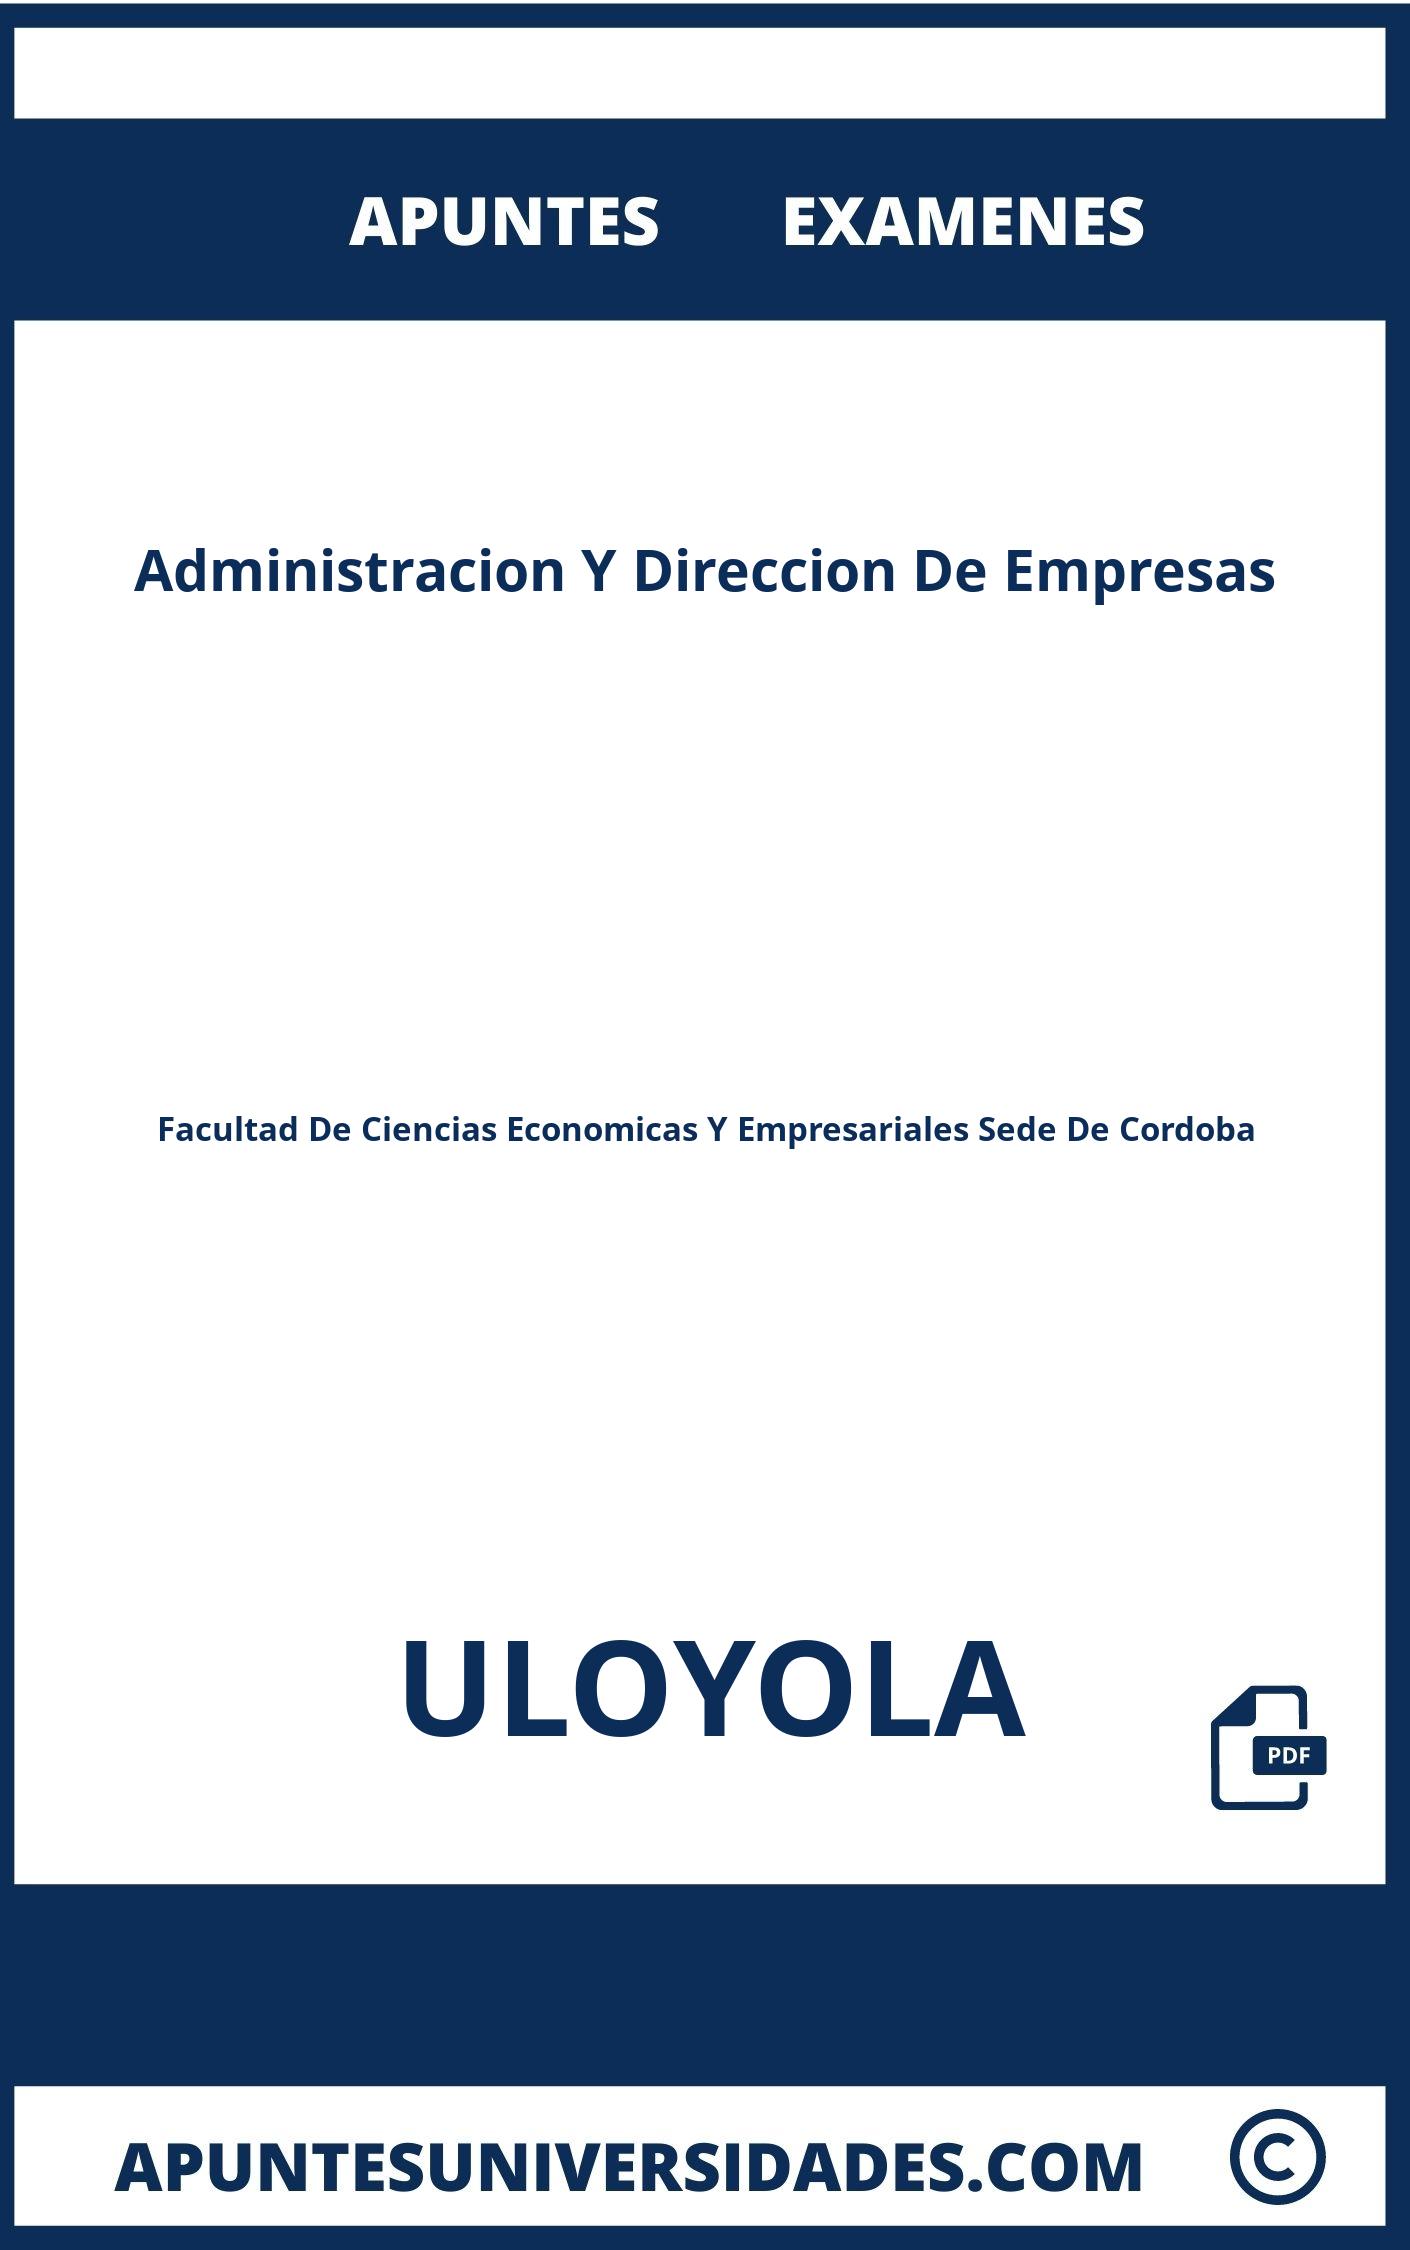 Administracion Y Direccion De Empresas ULOYOLA Examenes Apuntes